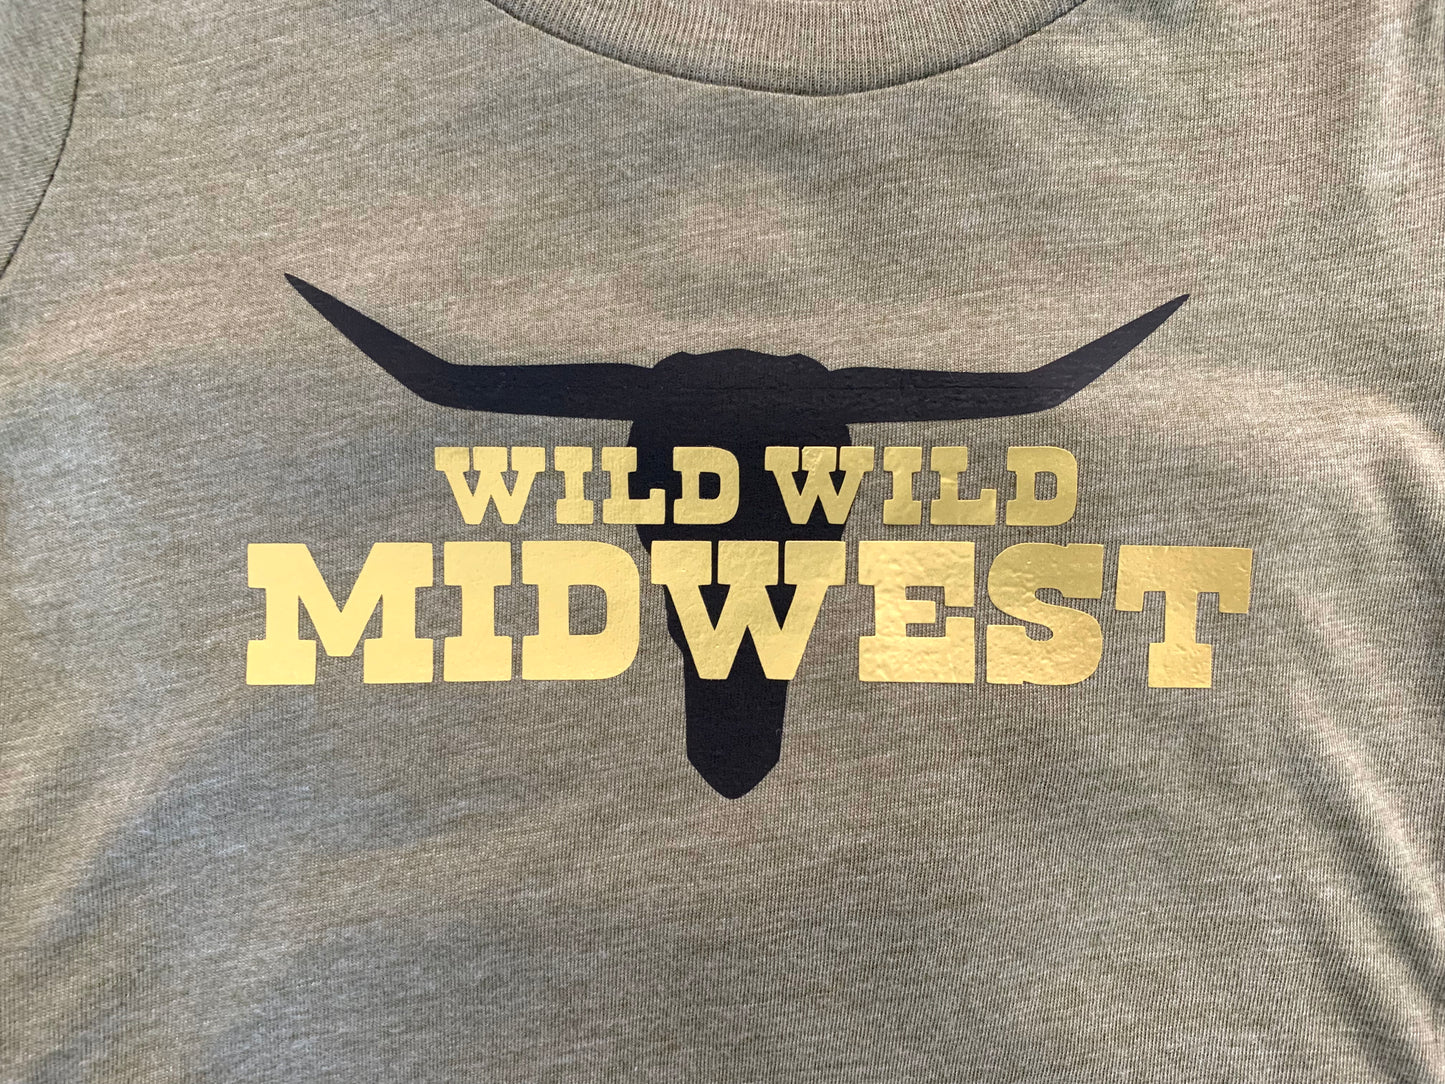 Wild wild Midwest graphic